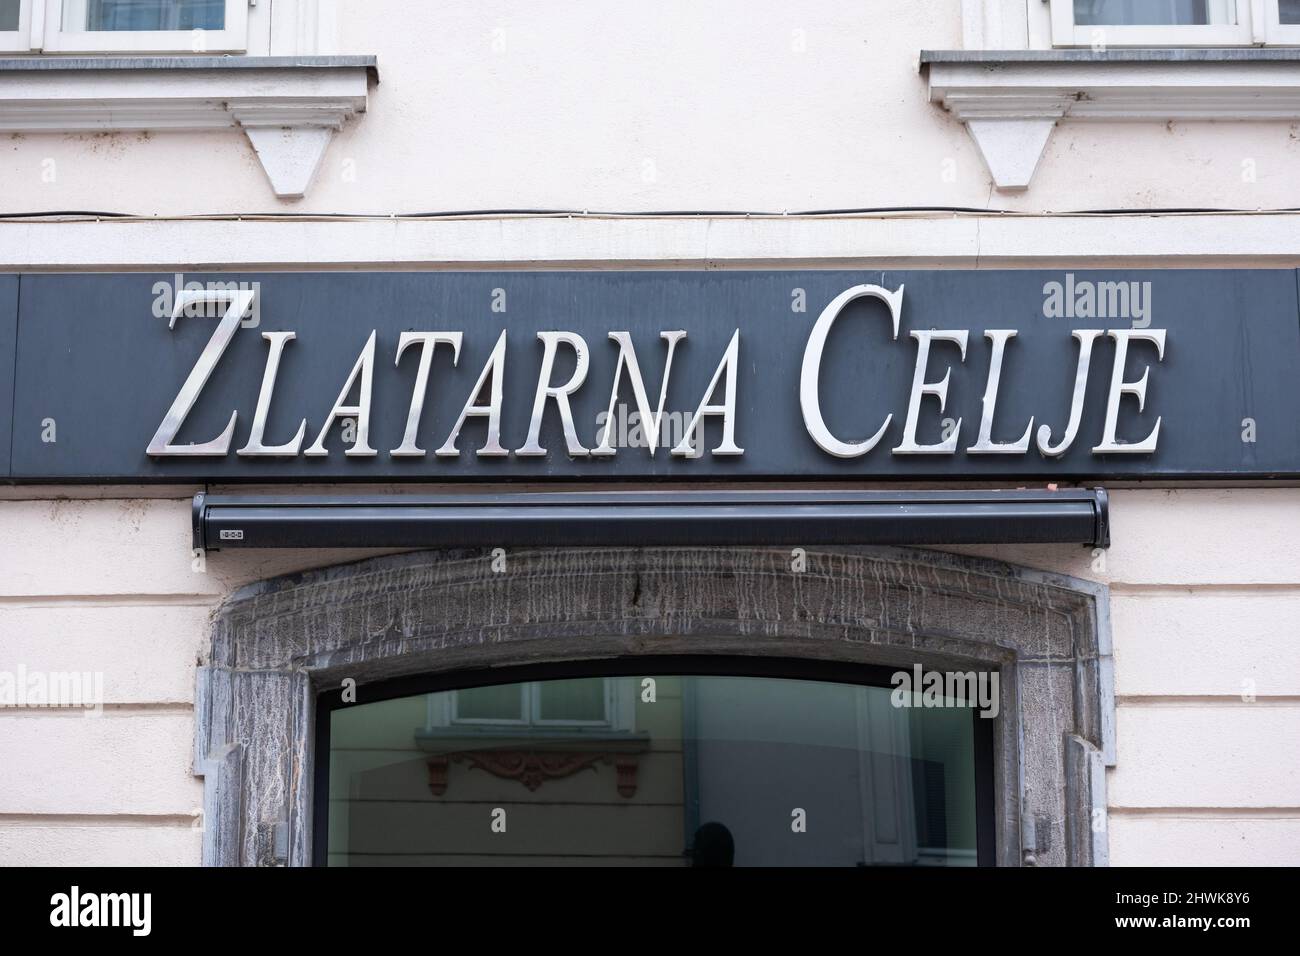 Slovenia, Ljubljana - March 6 2022: Zlatarna Celje logo on building. Stock Photo